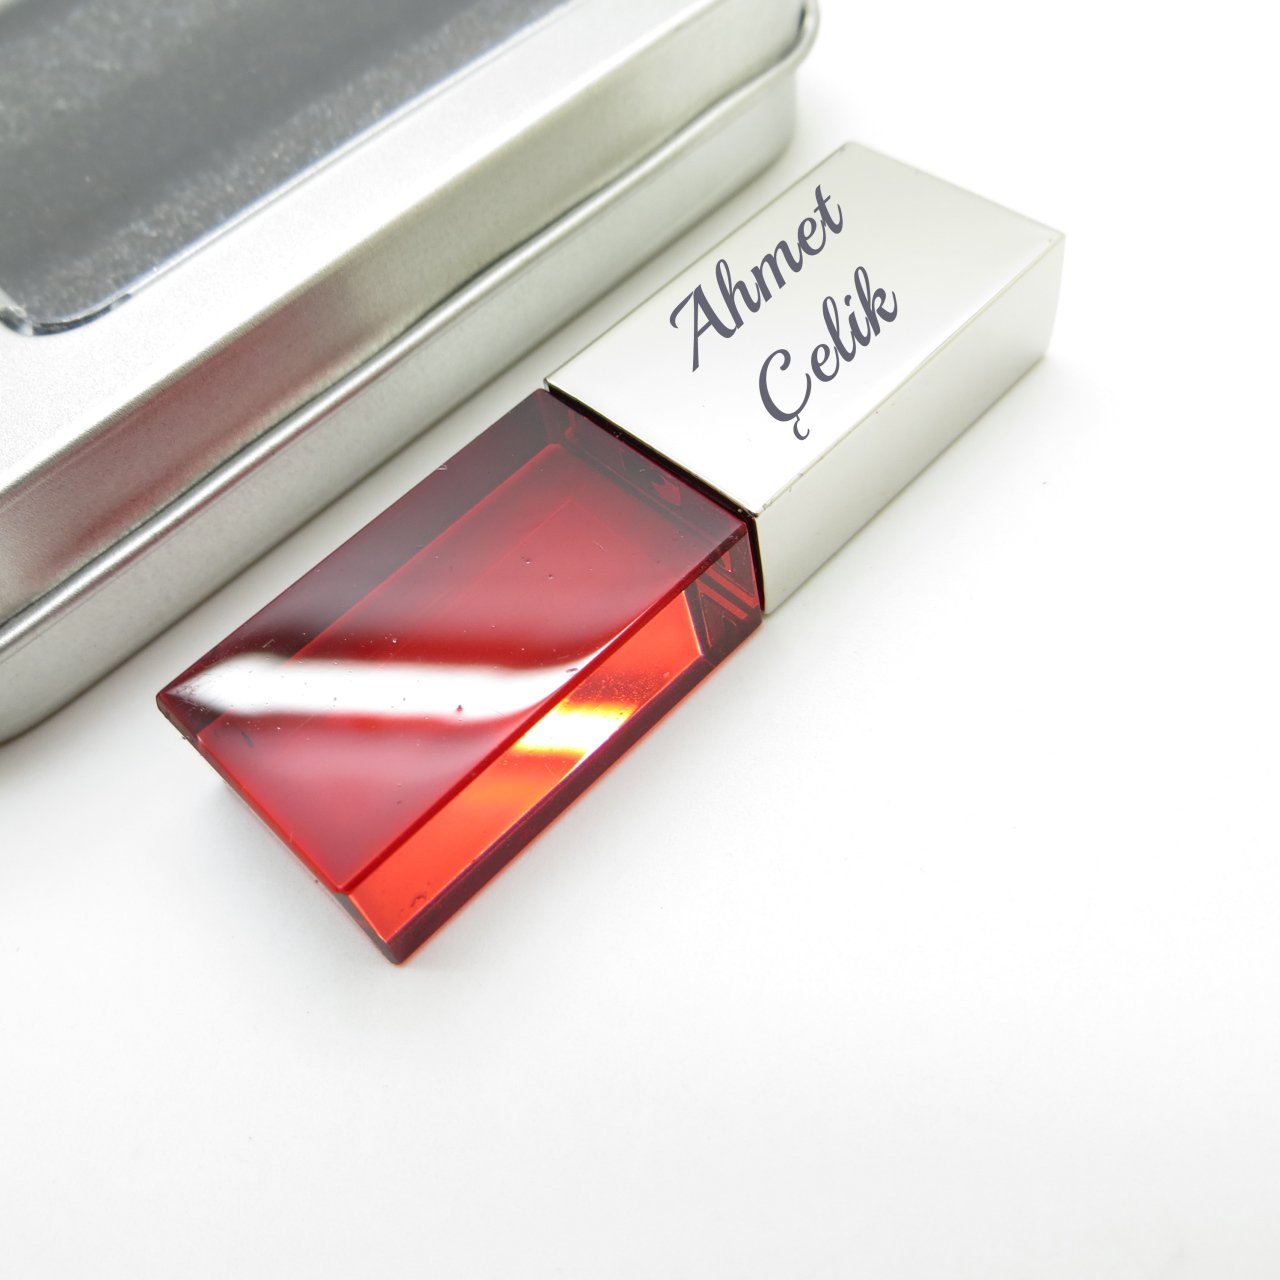 Wings Kişiye Özel Led Işıklı Kırmızı Kristal Usb Bellek 16GB Cam-Metal Gümüş Gri | İsme Özel Usb Bellek | Hediyelik Usb Flash Bellek